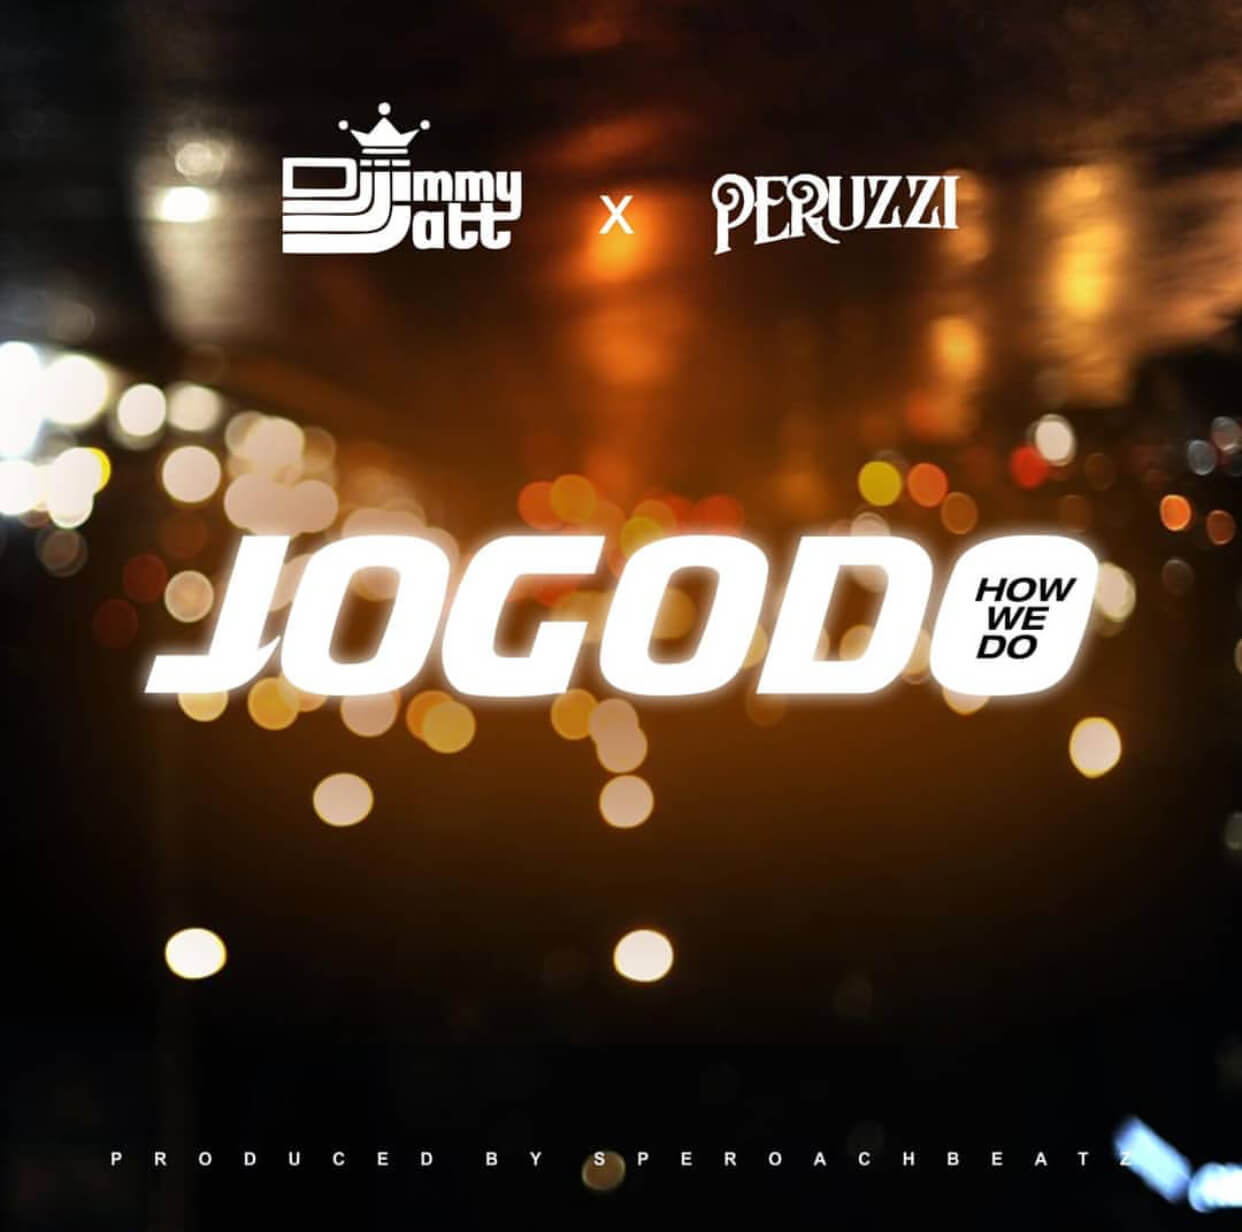 DJ Jimmy Jatt – "Jogodo" feat. Peruzzi